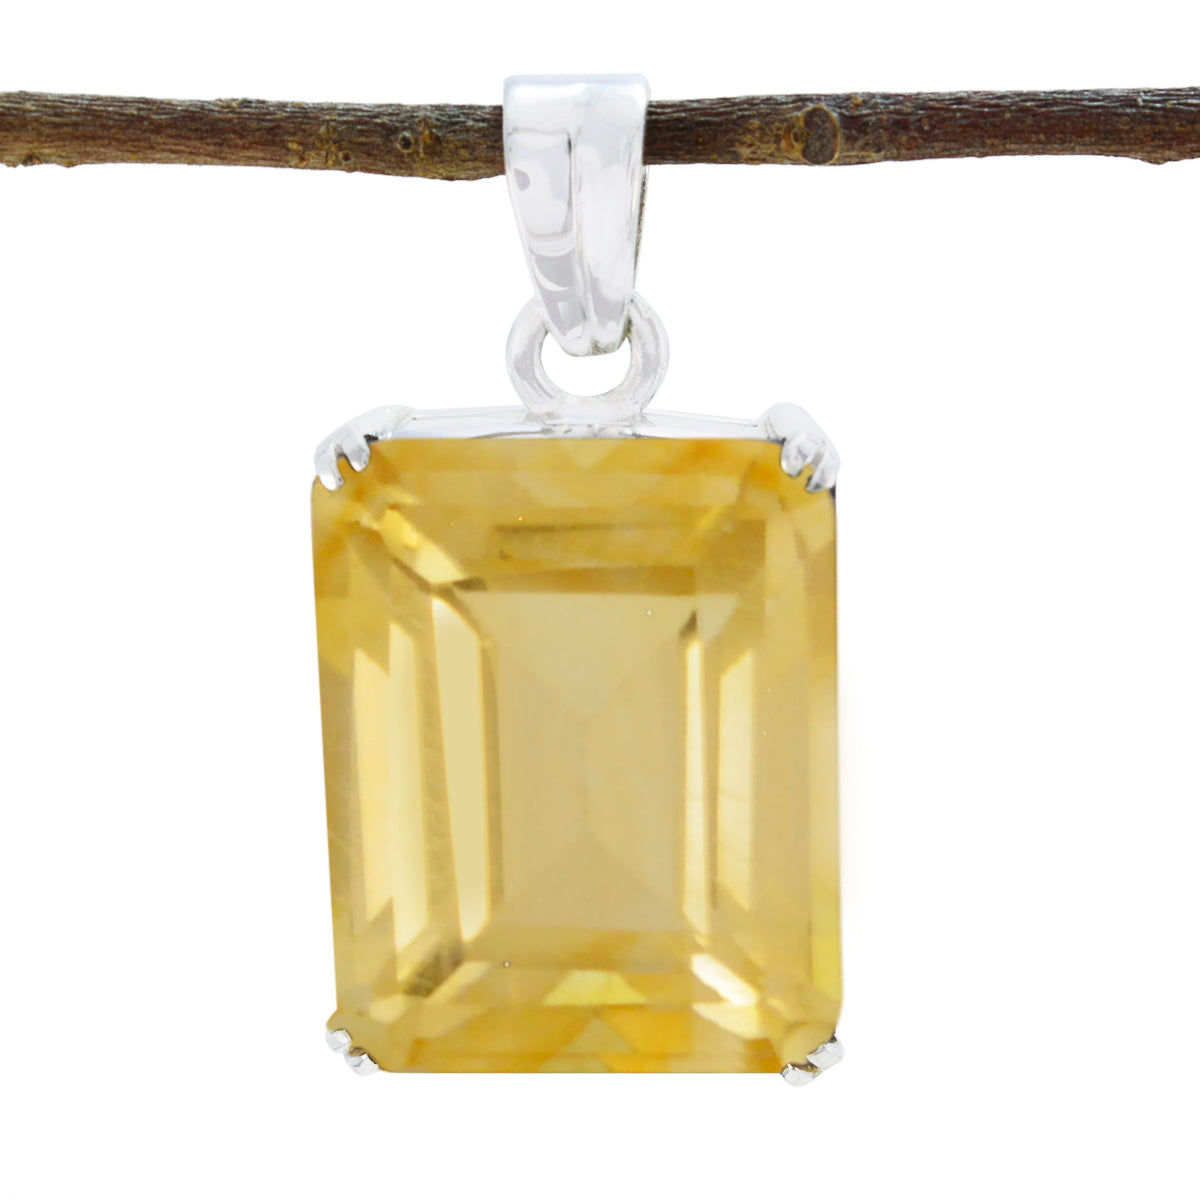 riyo attraente ciondolo con gemme ottagonali sfaccettate in argento massiccio con citrino giallo, regalo per anniversario